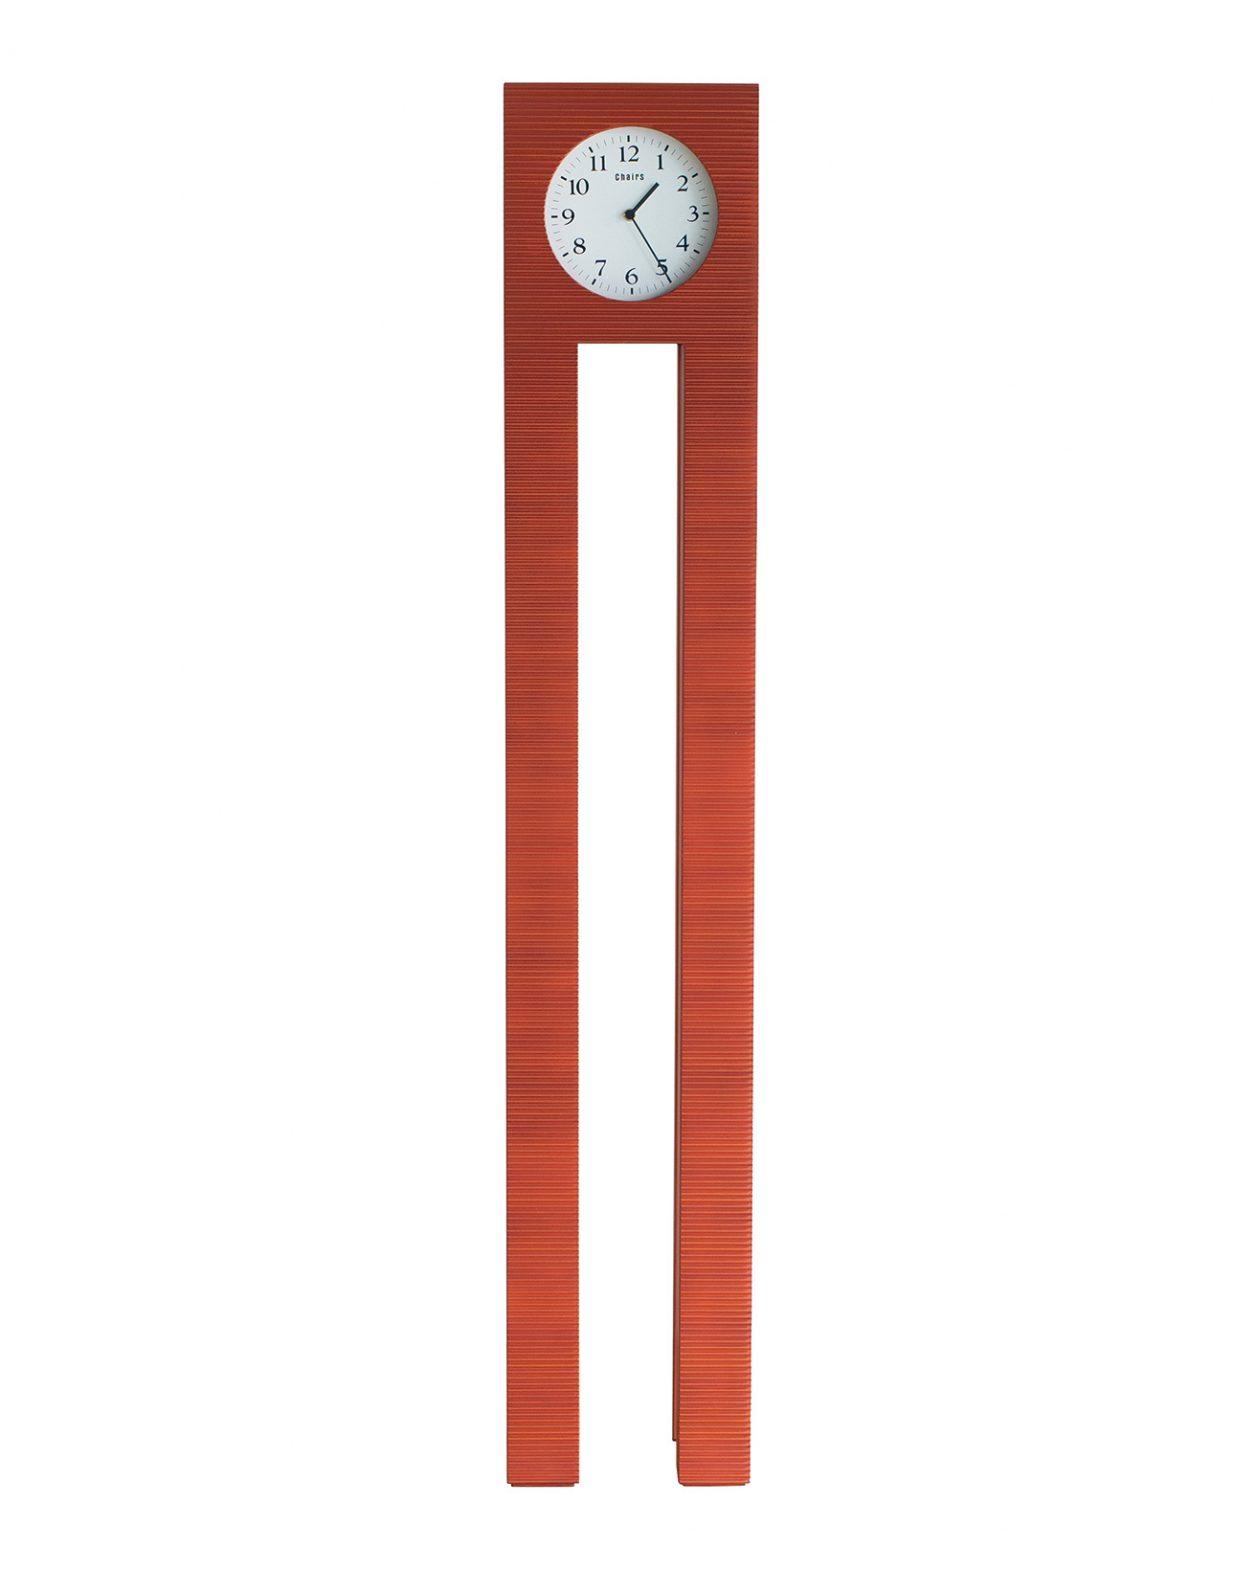 1989年に内田繁がデザインした置時計《Dear Morris》が復刻。